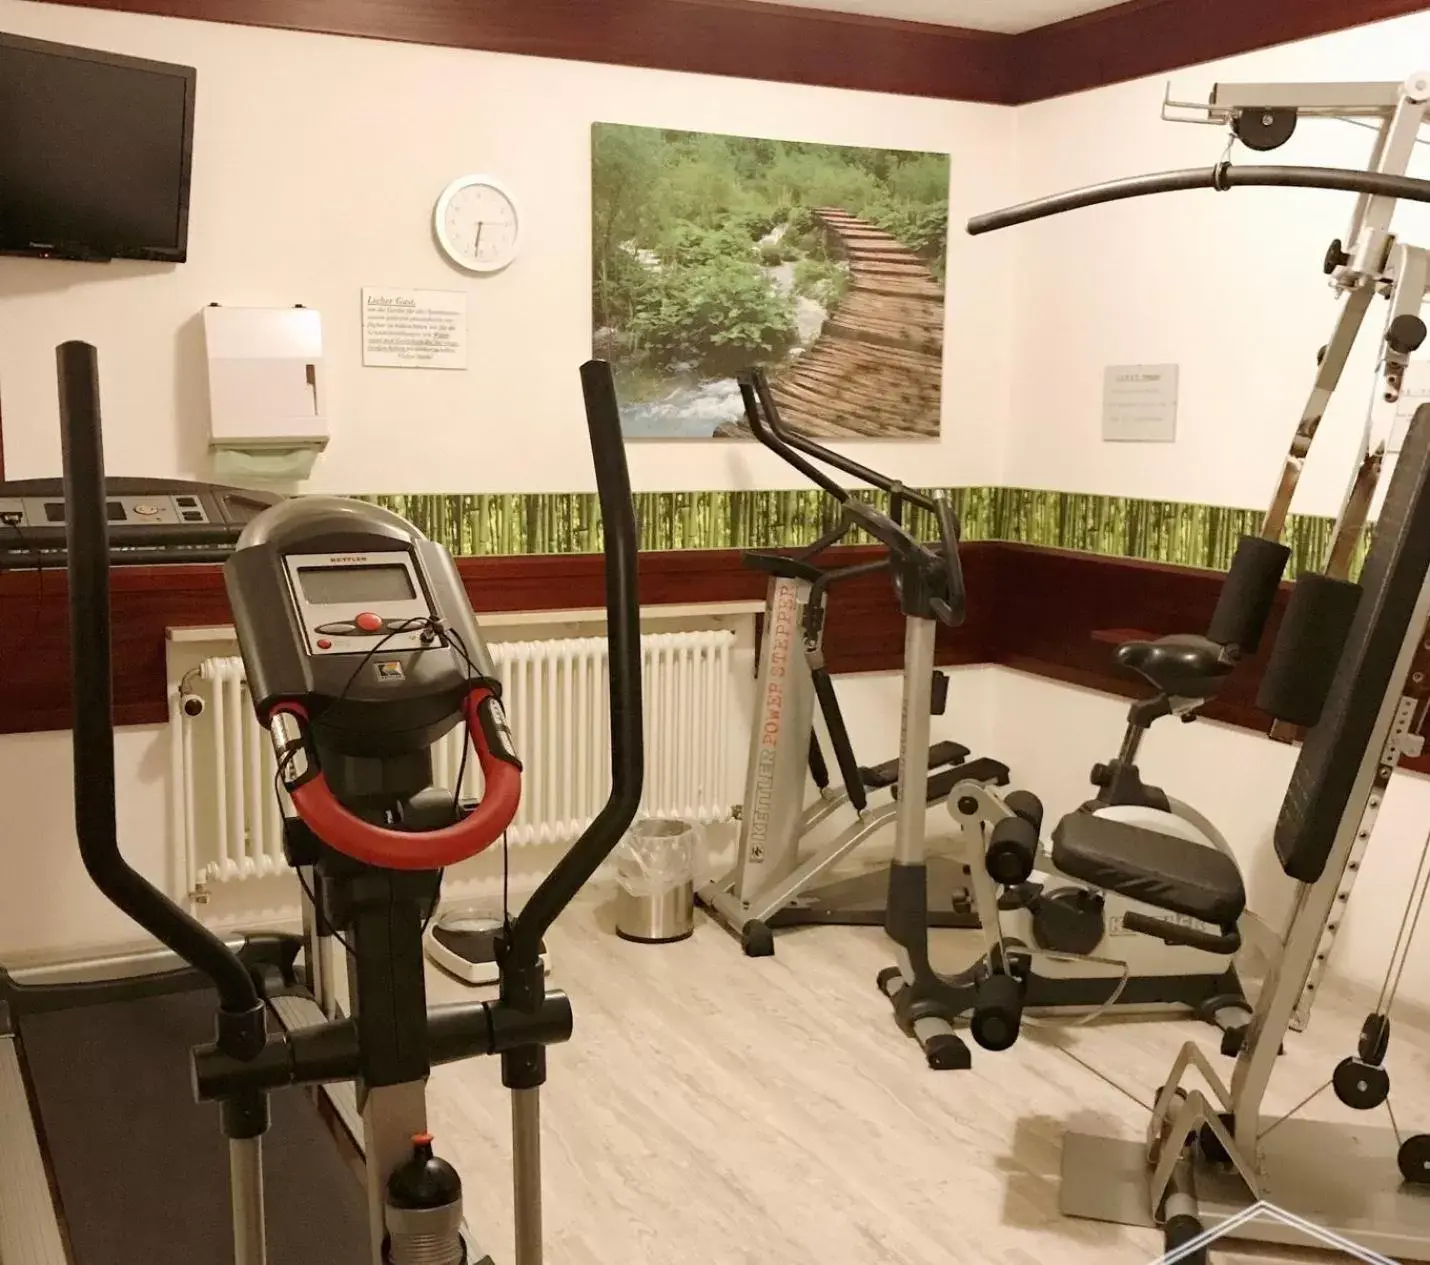 Fitness centre/facilities, Fitness Center/Facilities in Kurhotel Wiedenmann